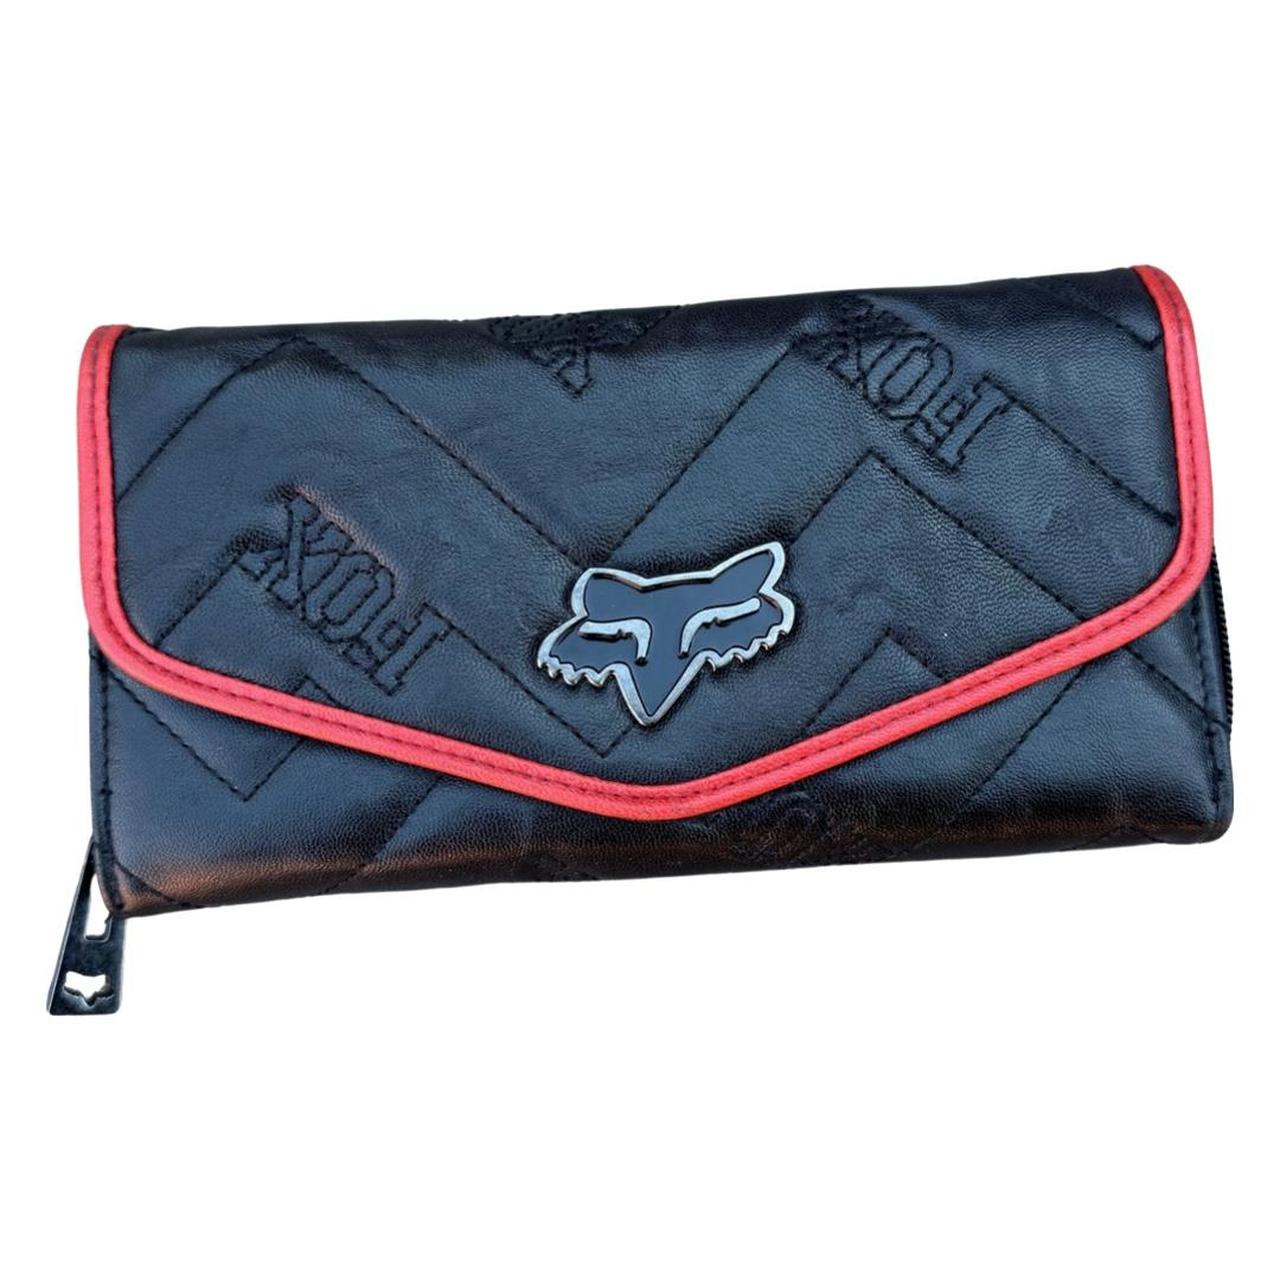 fox racing handbags quest tote handbags - casual Sportpat Canada